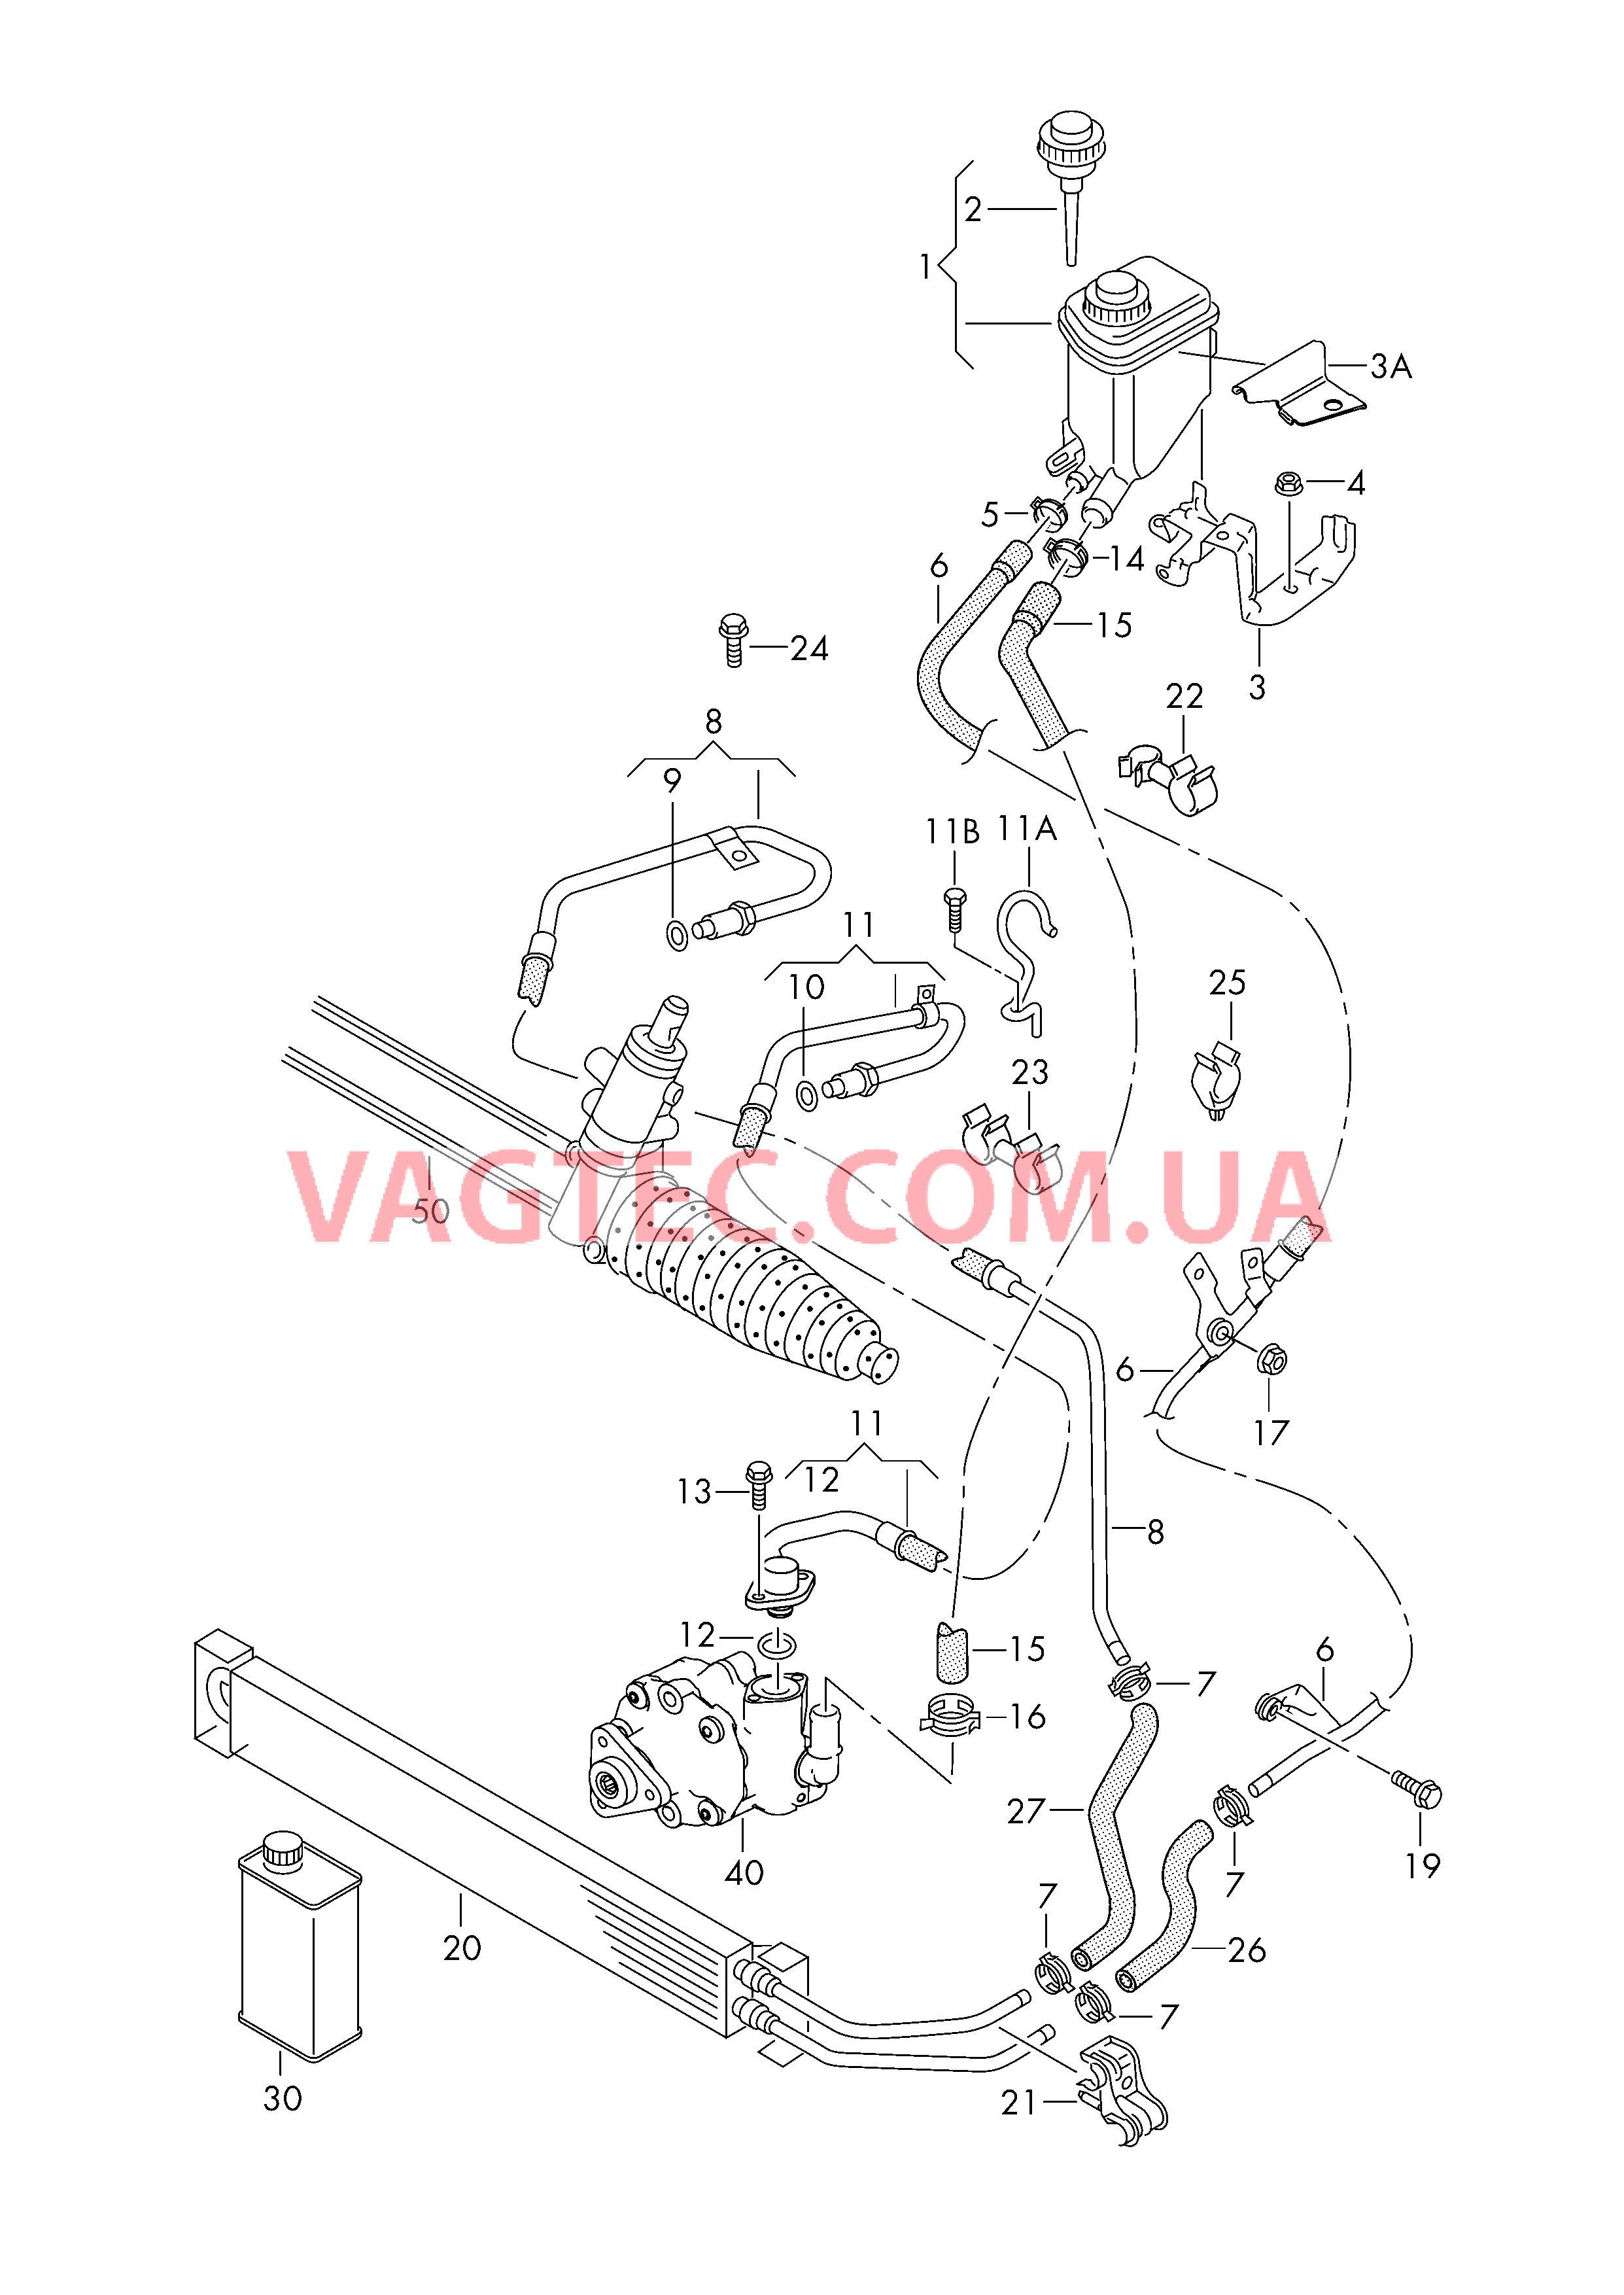 Масляный бачок с соединительными деталями, шлангами  для ГУPа  для VOLKSWAGEN Touareg 2018